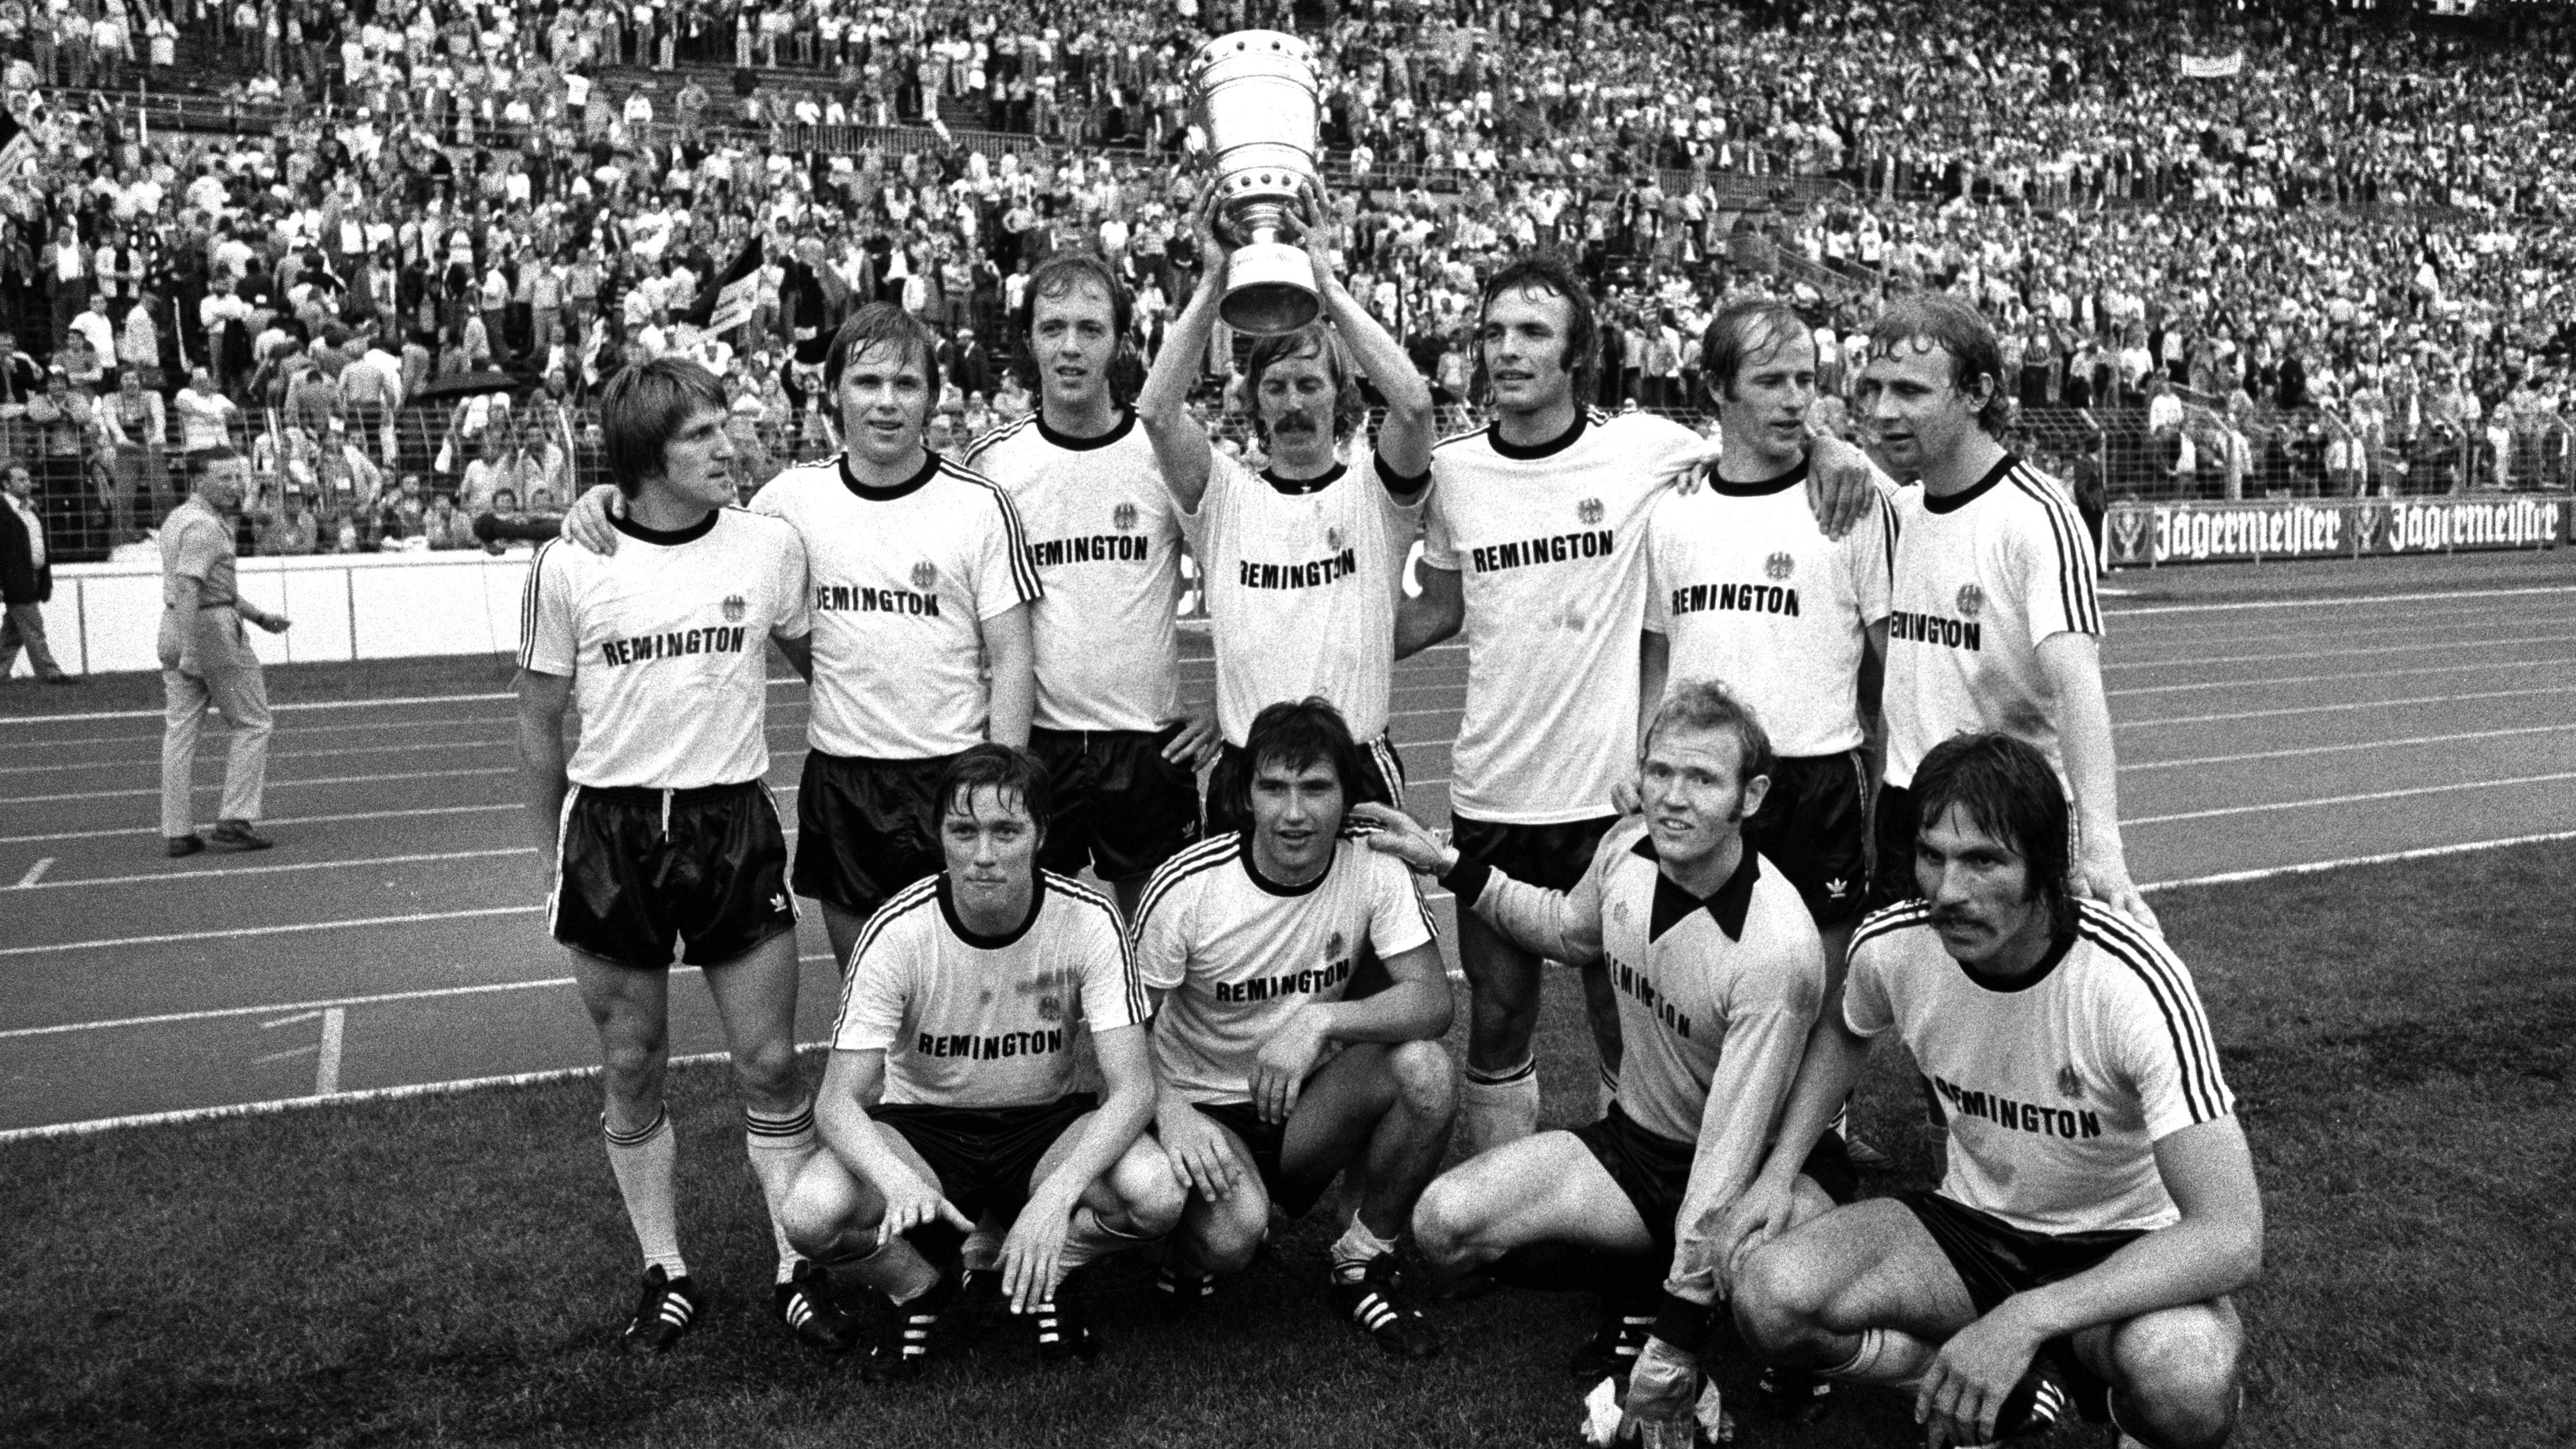 <strong>Platz 5 (geteilt): Eintracht Frankfurt (15 Siege)</strong><br>Mit Jürgen Grabowski und Karl-Heinz Körbel war Eintracht Frankfurt in den 1970er Jahren sehr erfolgreich, gewann zwischen Dezember 1973 und Dezember 1975 sogar 15 Pokalspiele in Folge und in dieser Phase zwei Mal den DFB-Pokal.&nbsp;